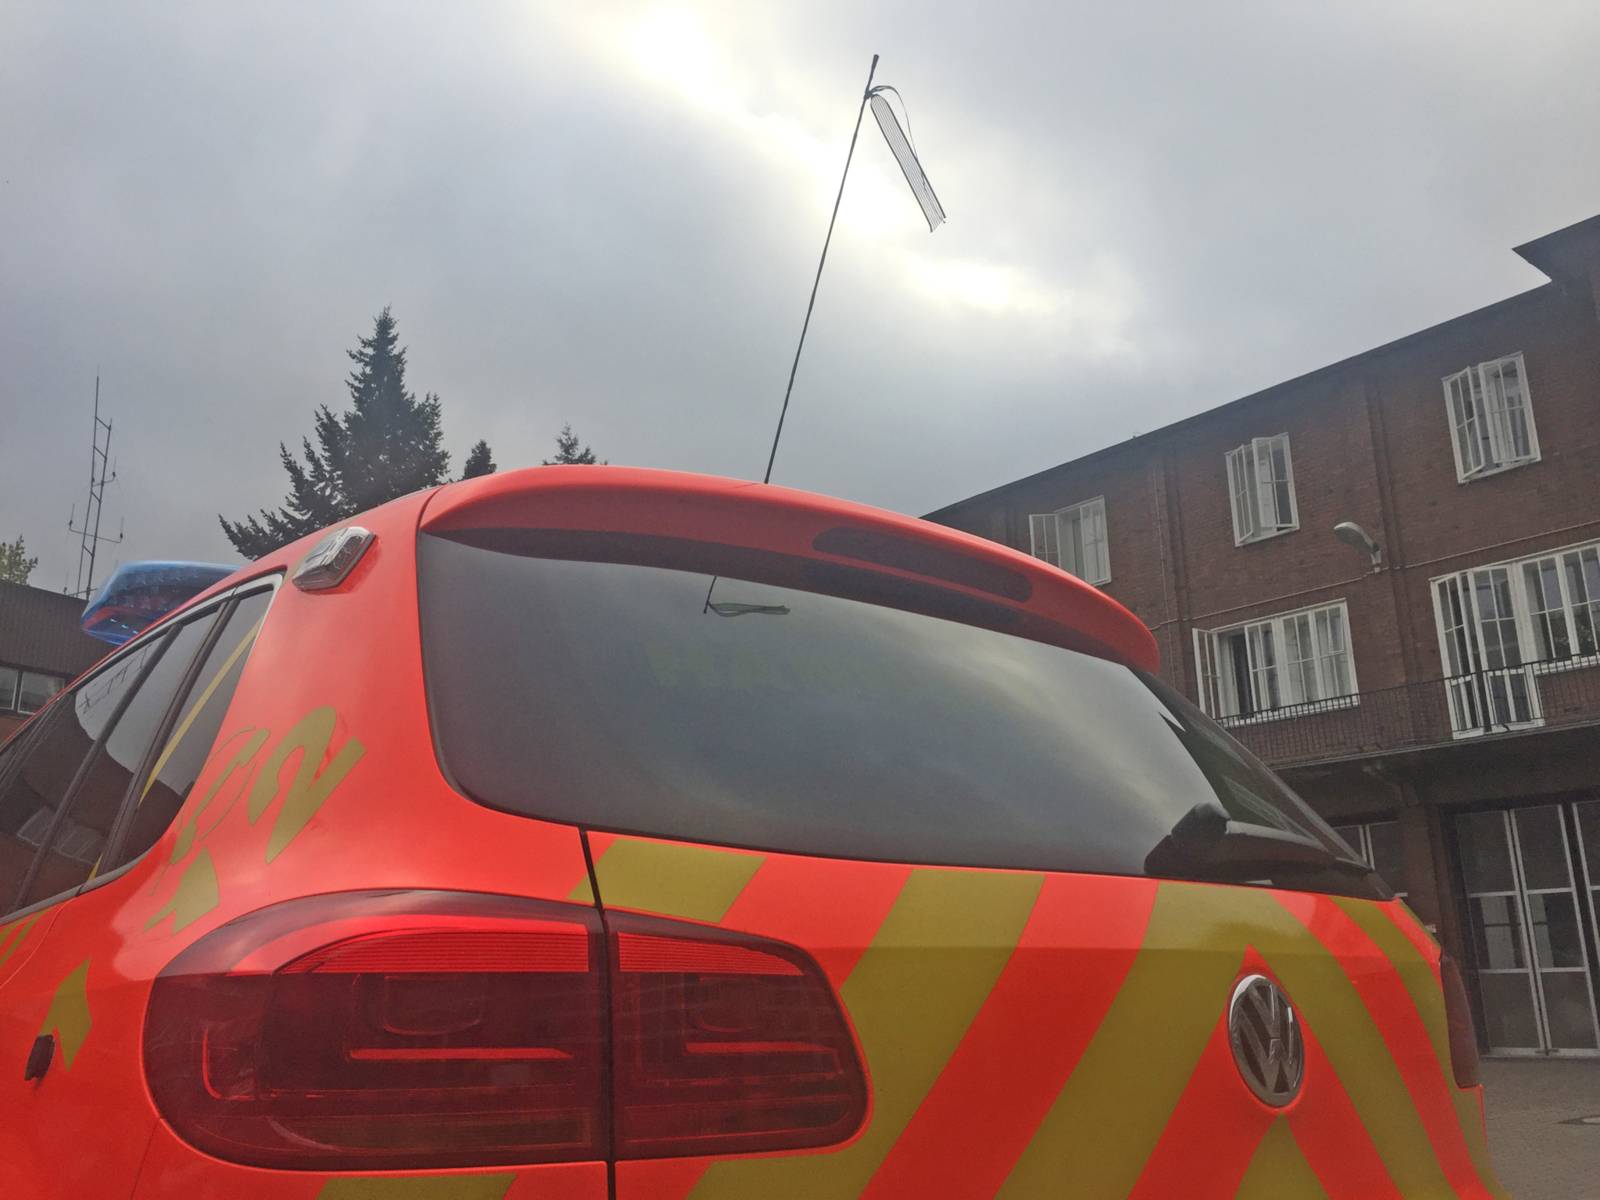 Mit großer Trauer und Mitgefühl haben Hannovers Brandschützer den Tod von zwei Feuerwehrleuten bei Unwettereinätzen in Thüringen und Nordrhein-Westfalen zur Kenntnis genommen.